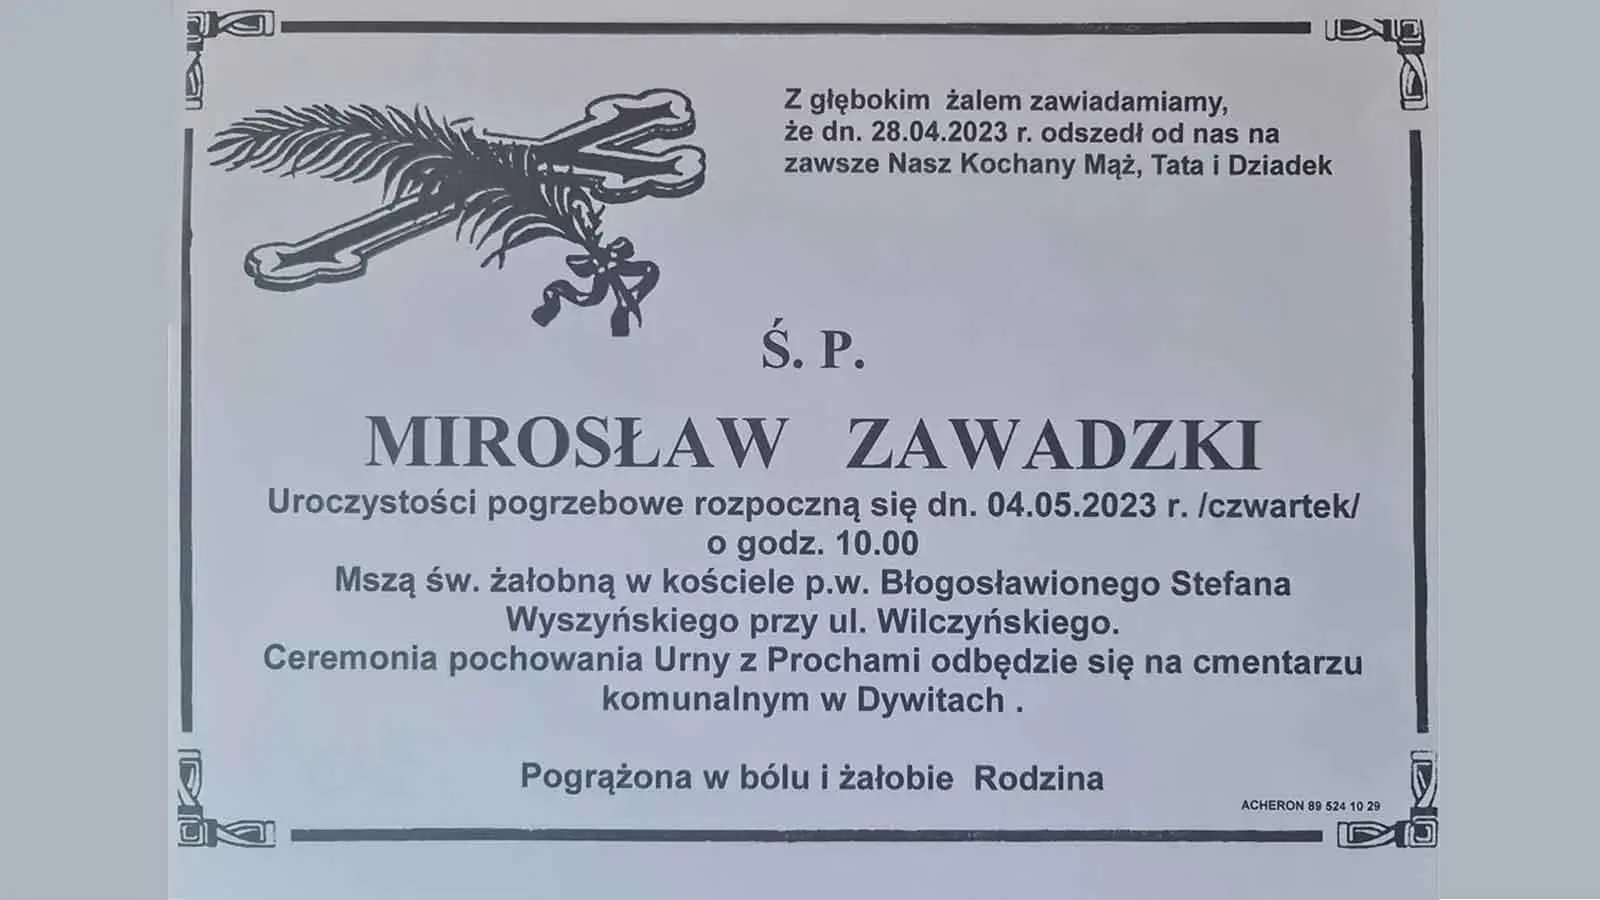 SpMiroslawZawadzki_wynik